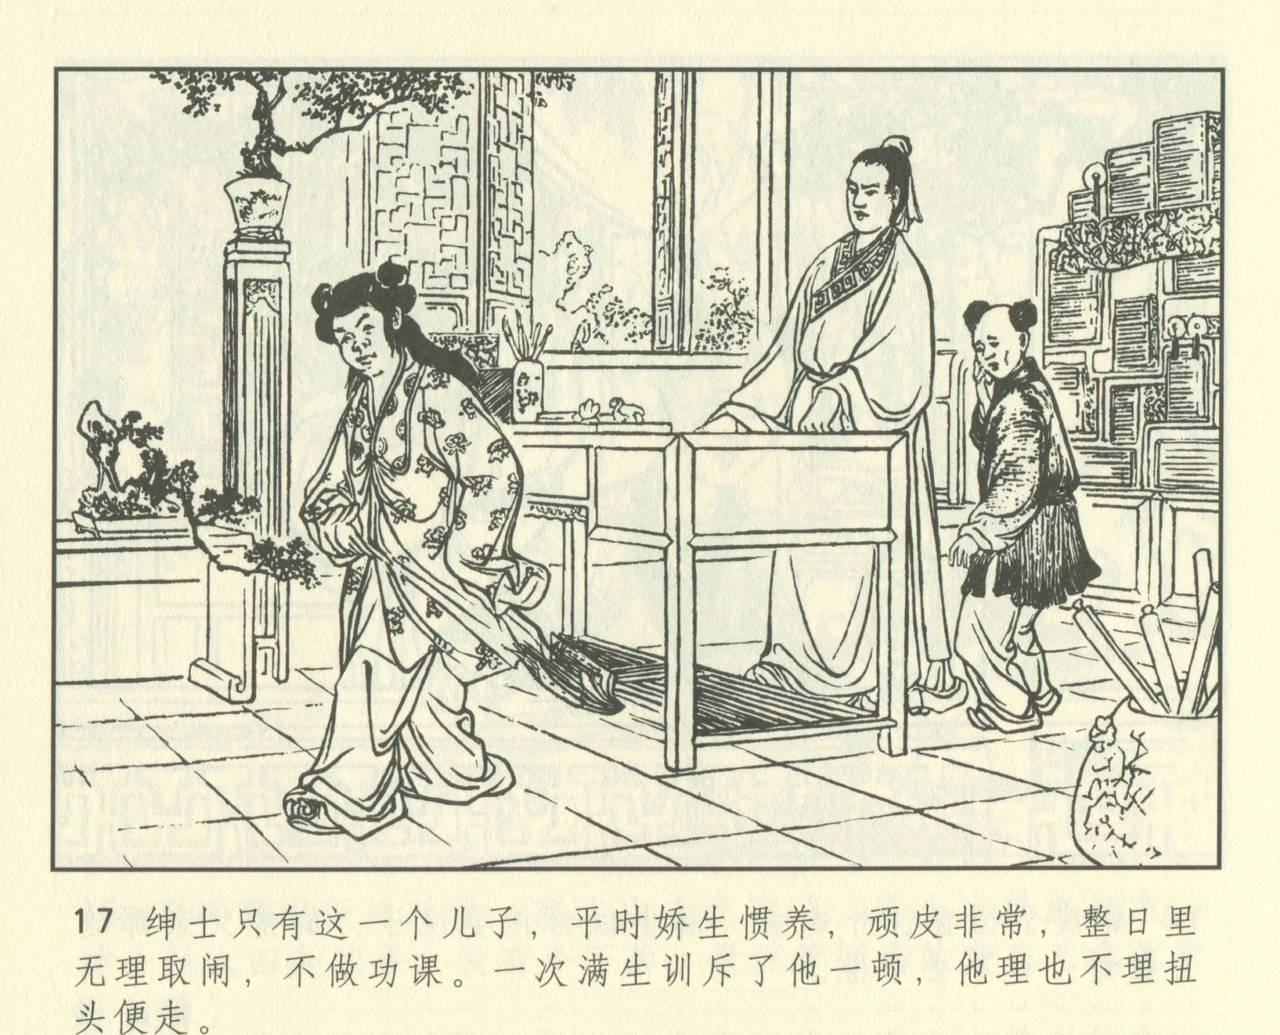 聊斋志异 张玮等绘 天津人民美术出版社 卷二十一 ~ 三十 428